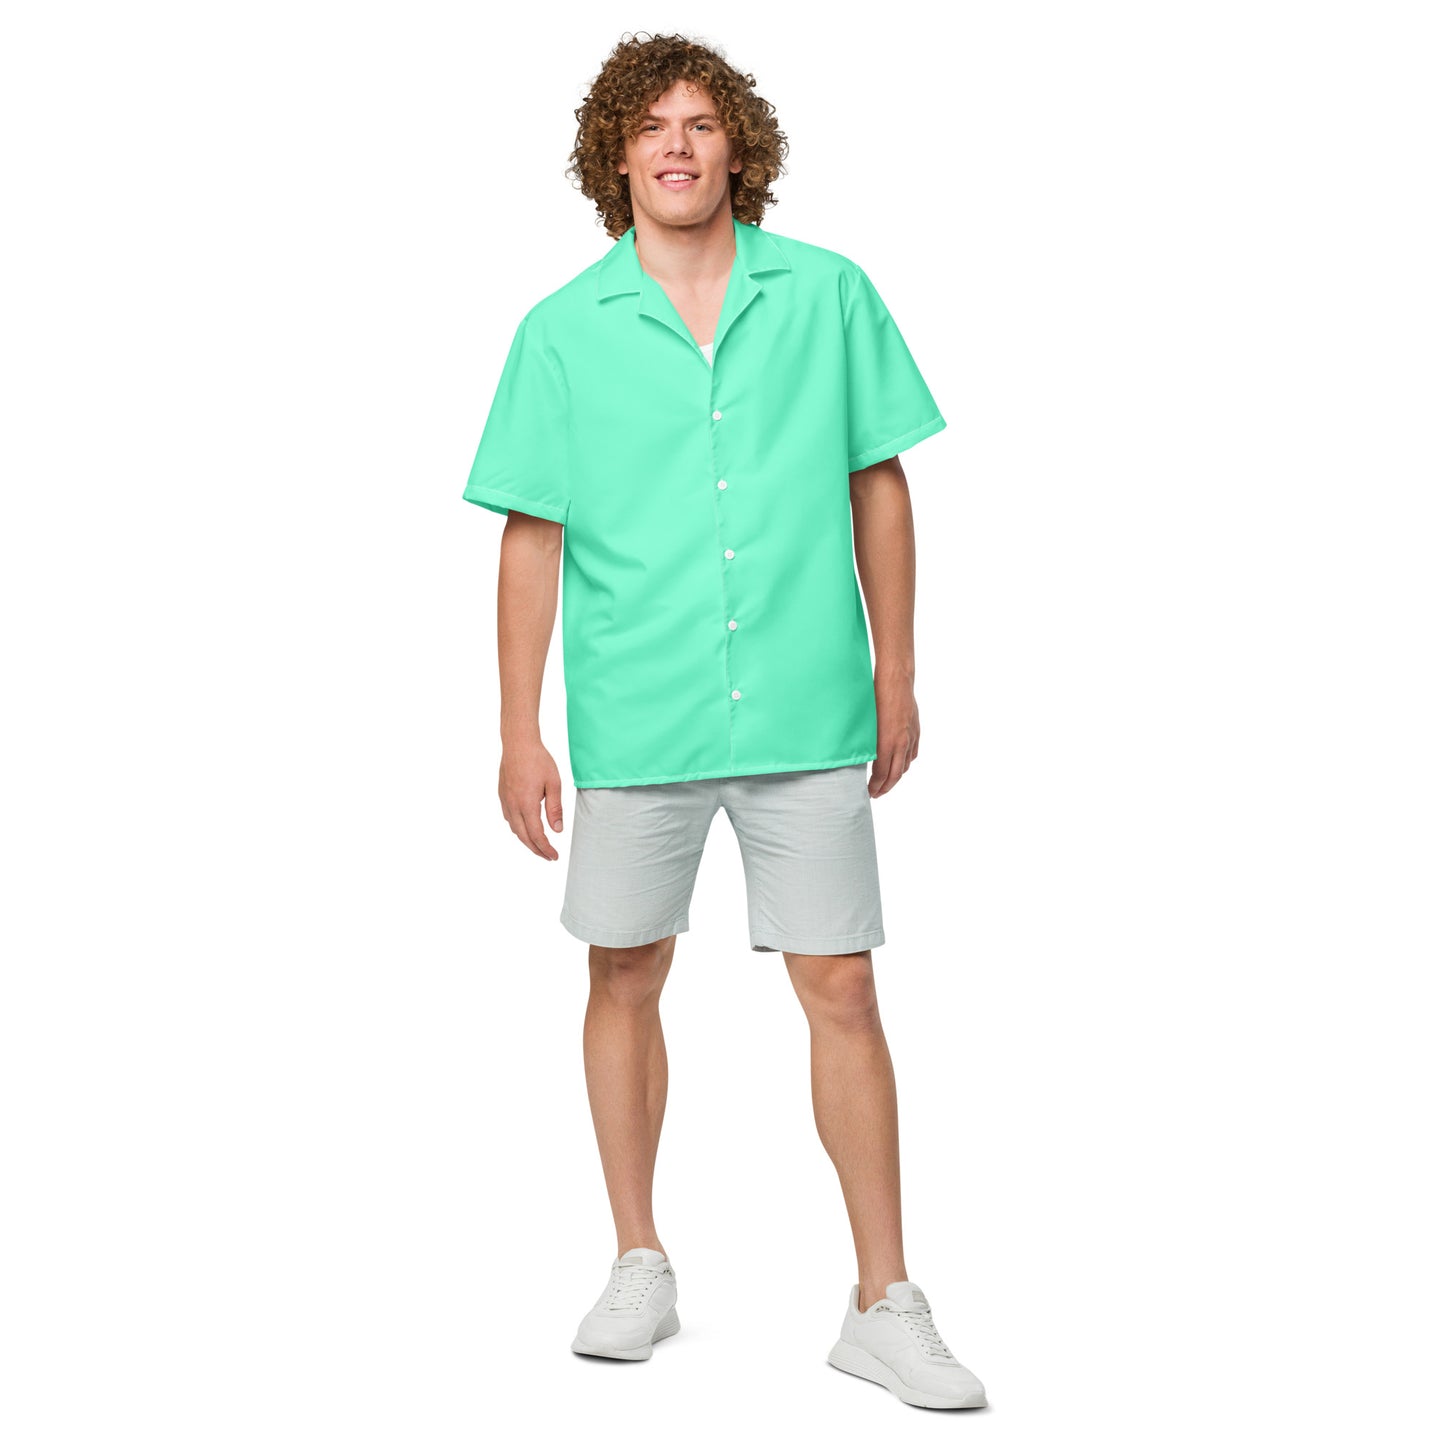 Aqua Sky button shirt - Tropical Seas Clothing 